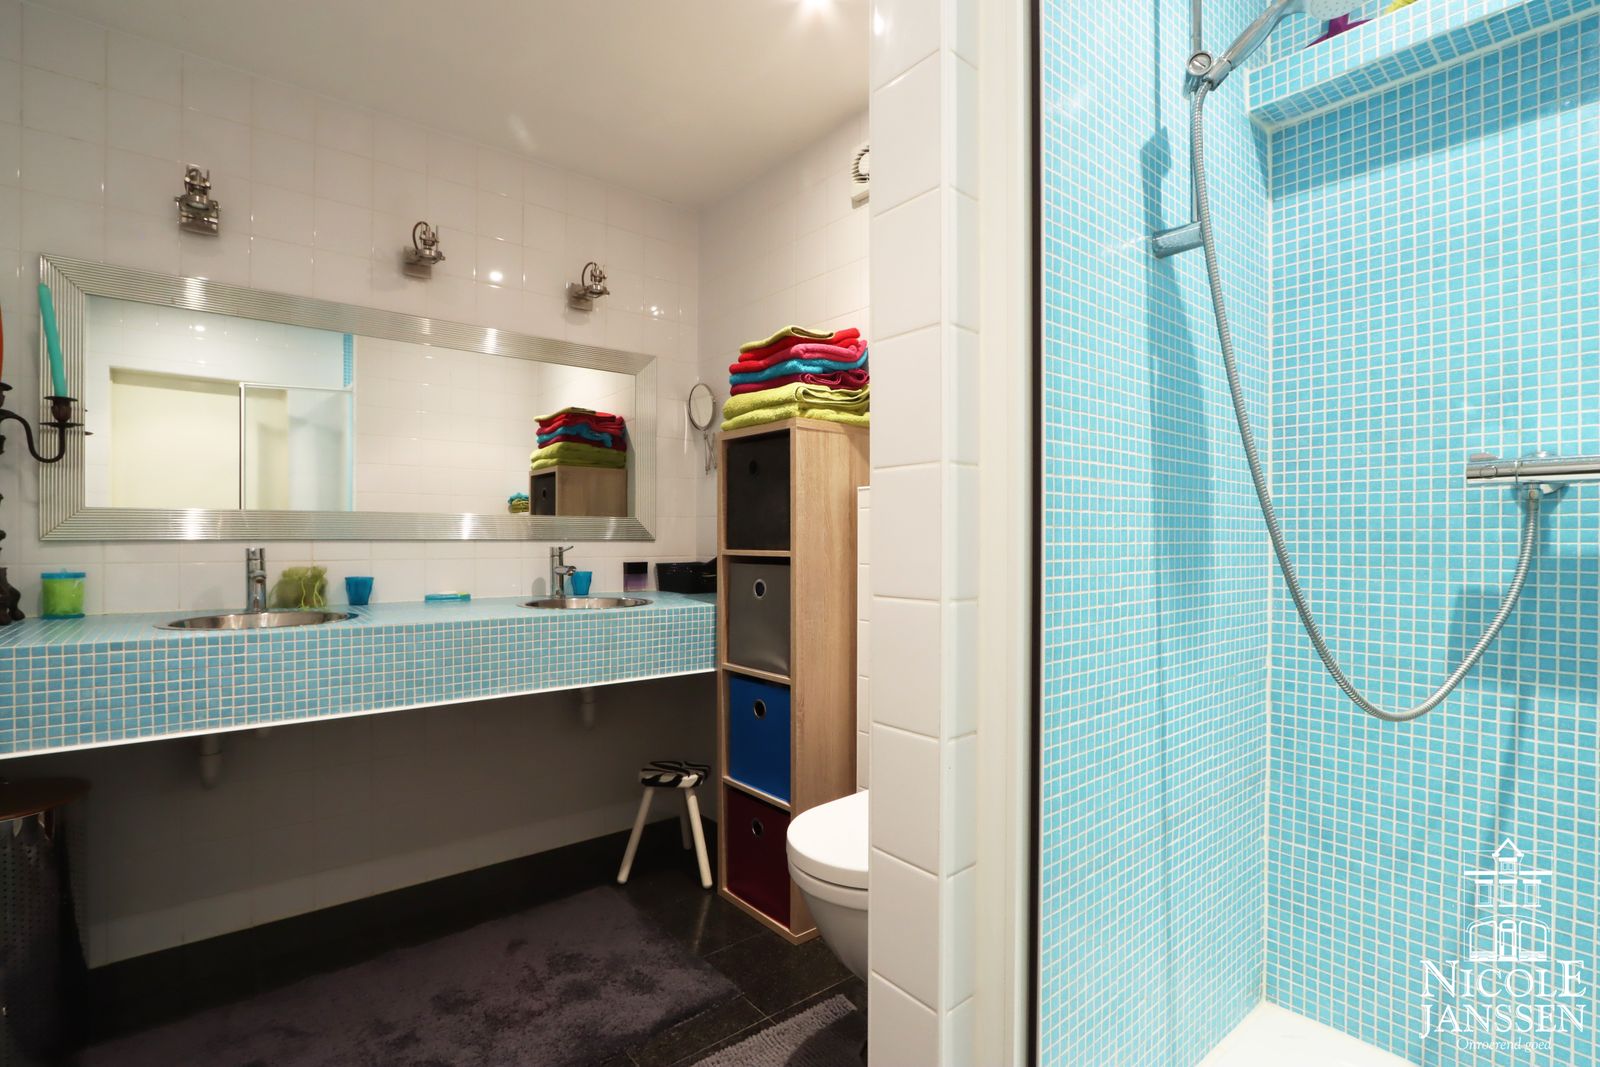 19 Nicole Janssen huis te koop Molenbeersel Venderstraat 5D (badkamer onder).jpg